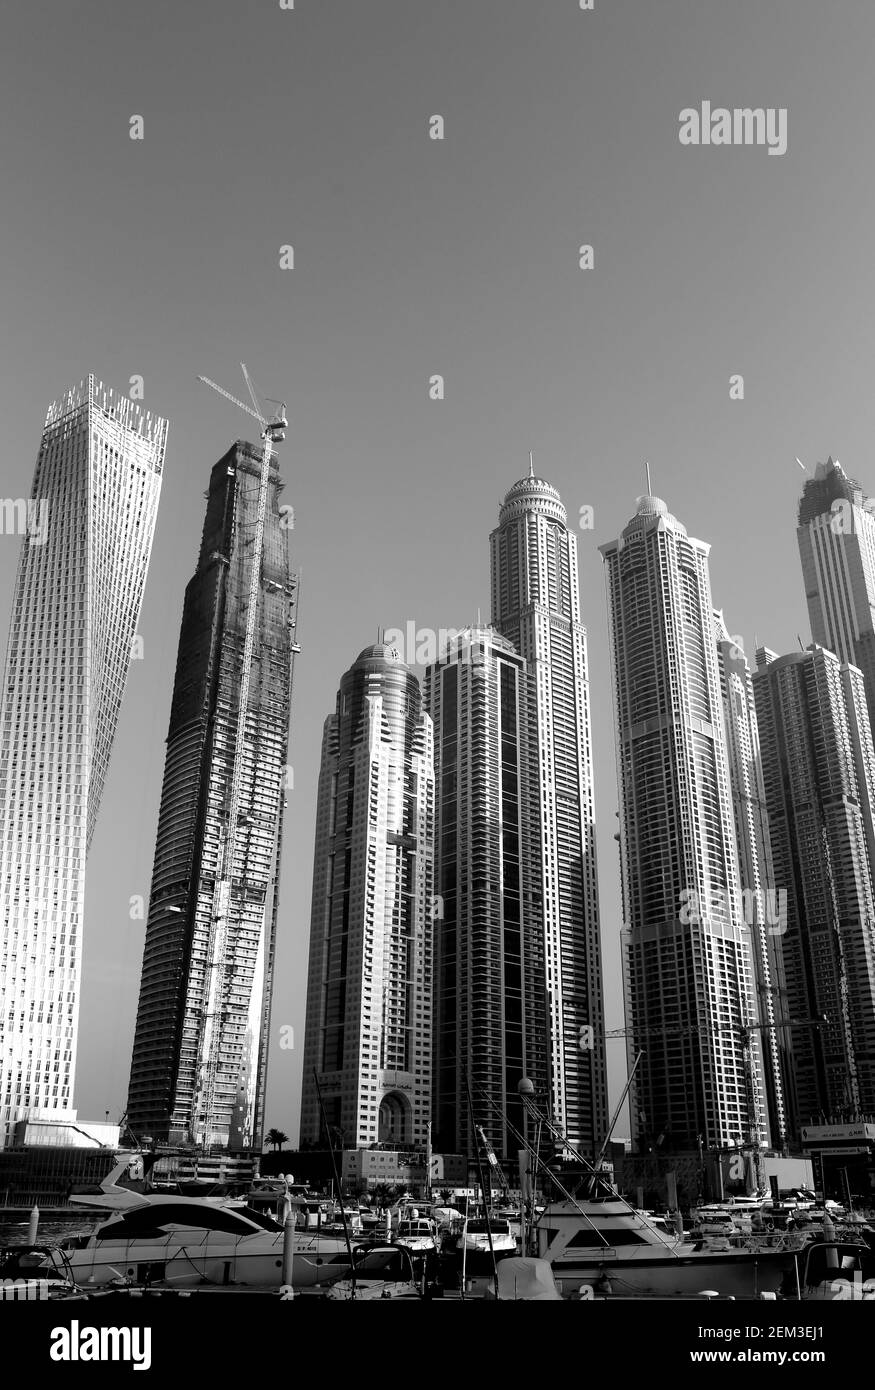 Monochrome, noir et blanc, image des immeubles résidentiels et des bateaux, Dubai Marina, Dubaï, Émirats arabes Unis Banque D'Images